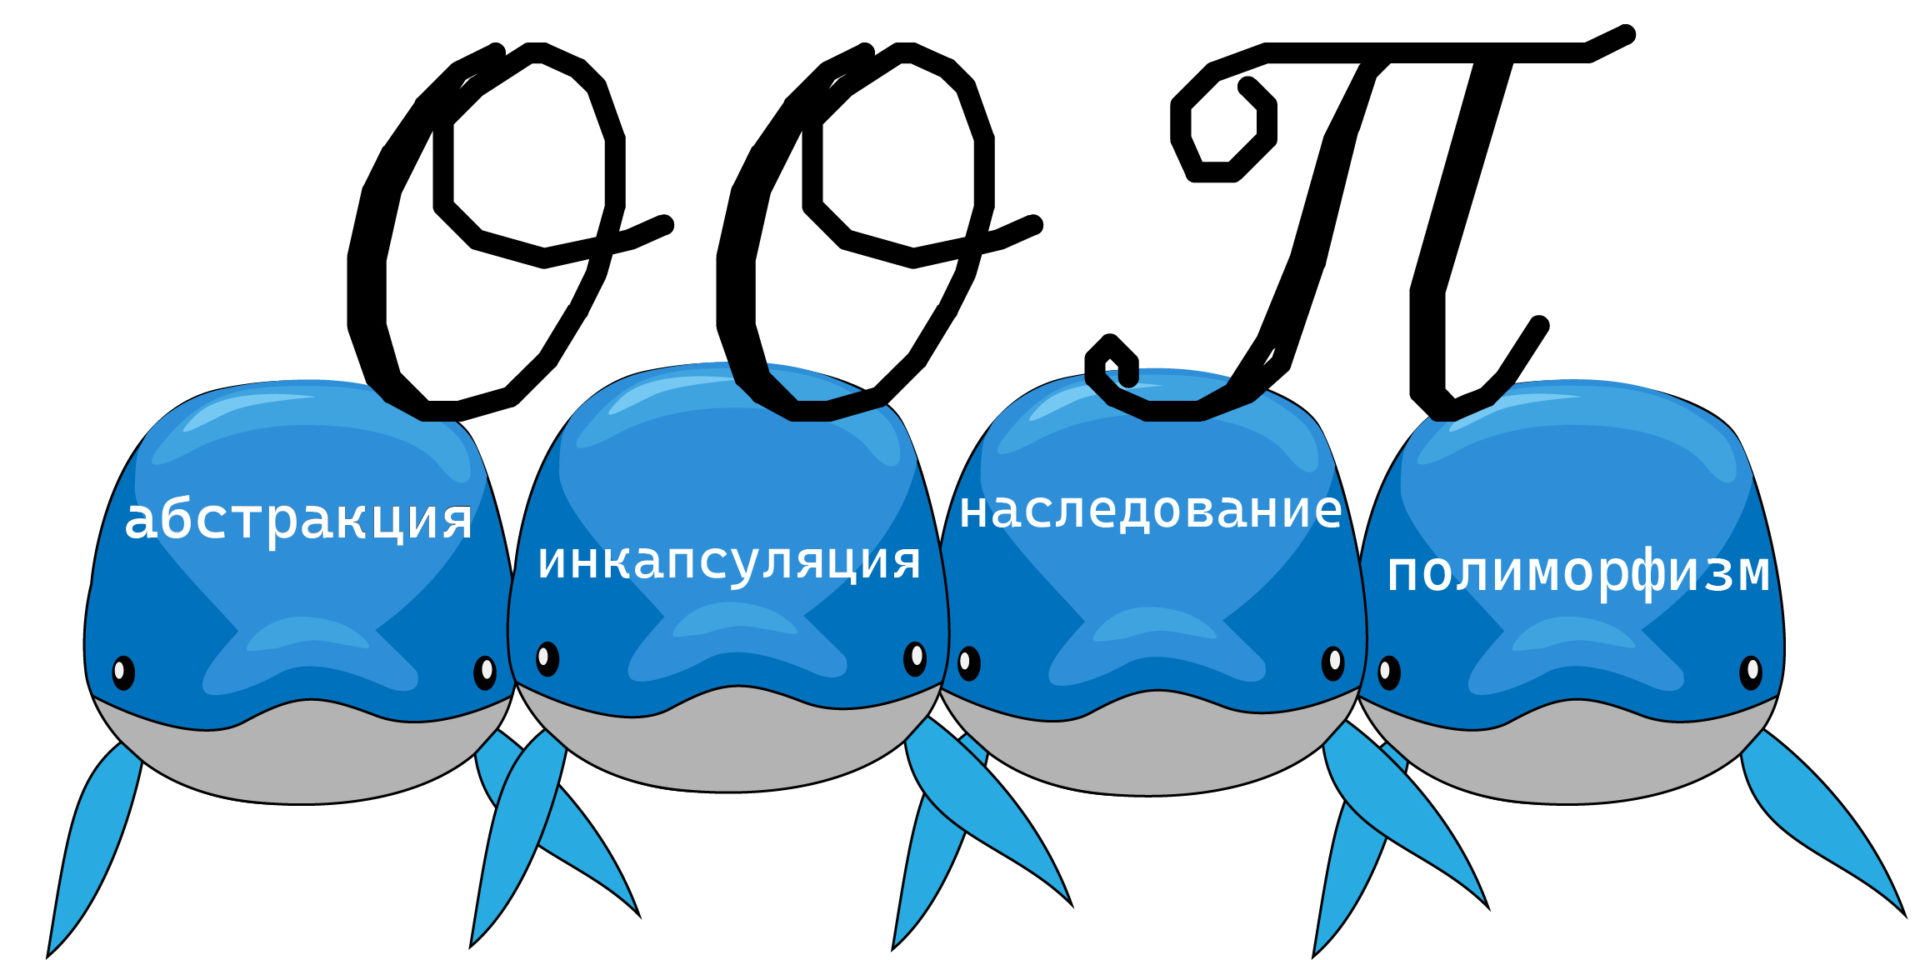 Картинка с 4 китами (с надписями абстракция, инкапсуляция, наследование, полиморфизм), на которых стоят буквы ООП